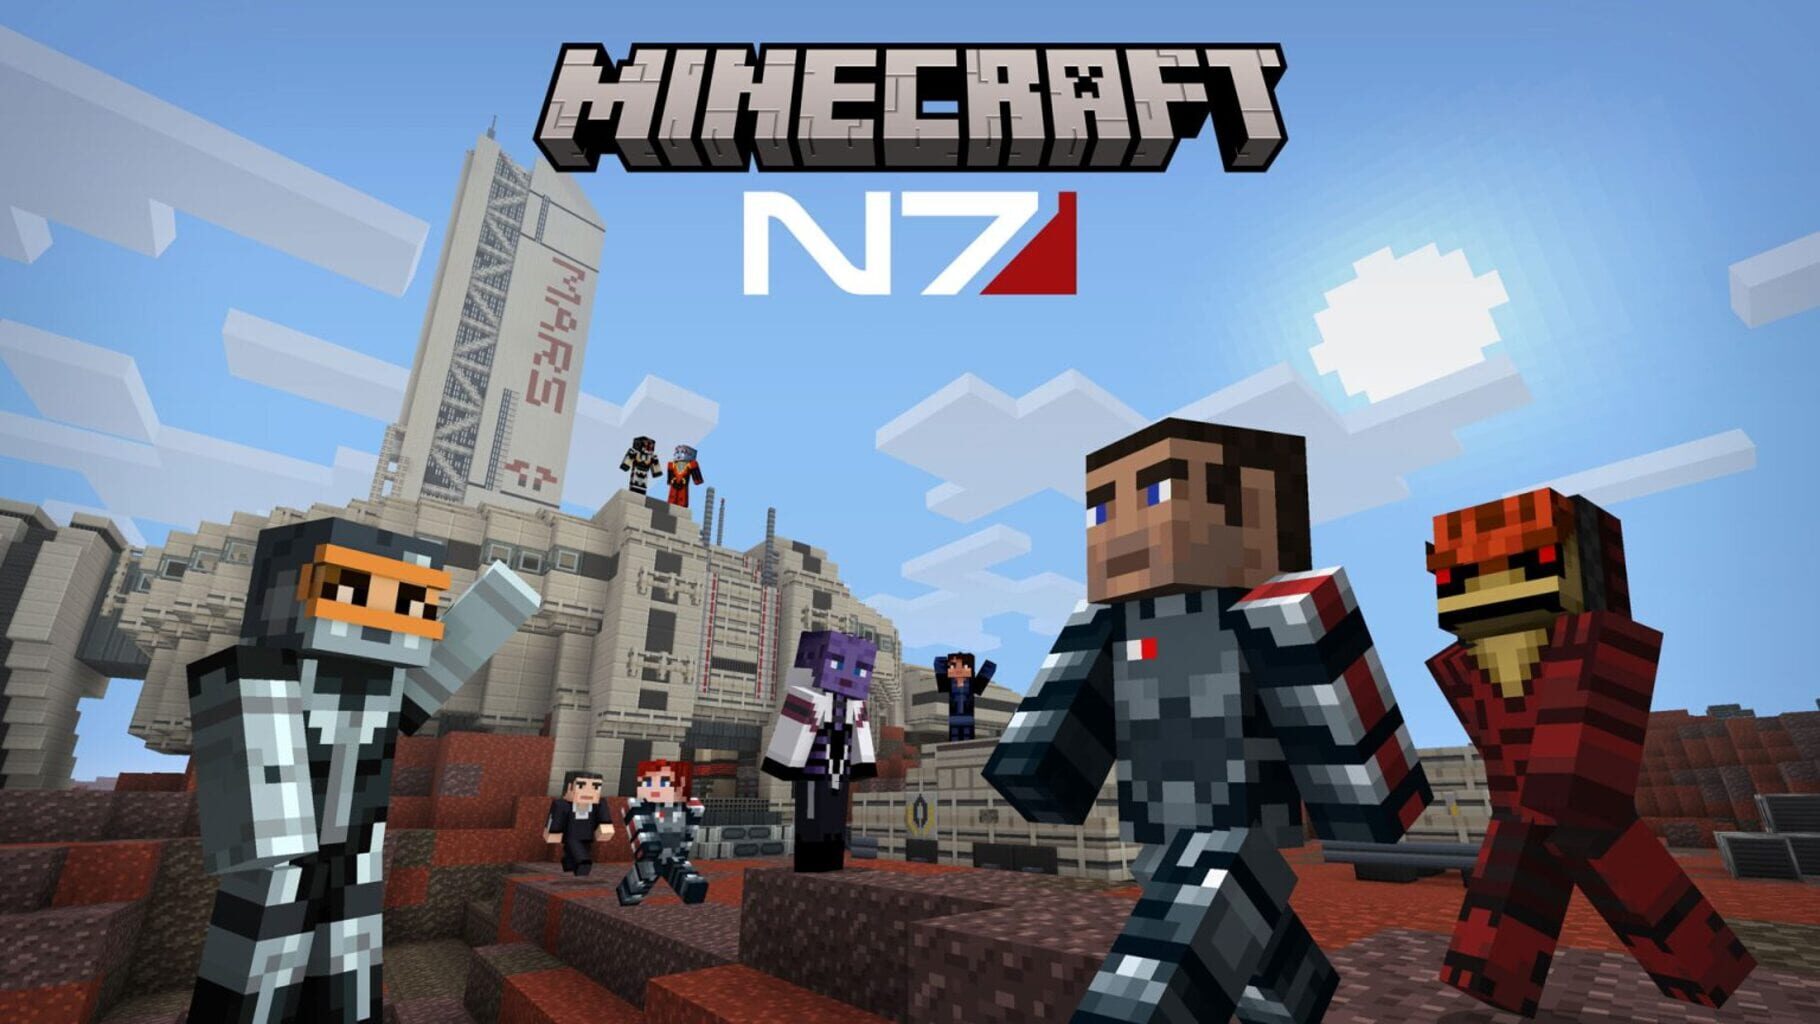 Arte - Minecraft: N7 Mash-up